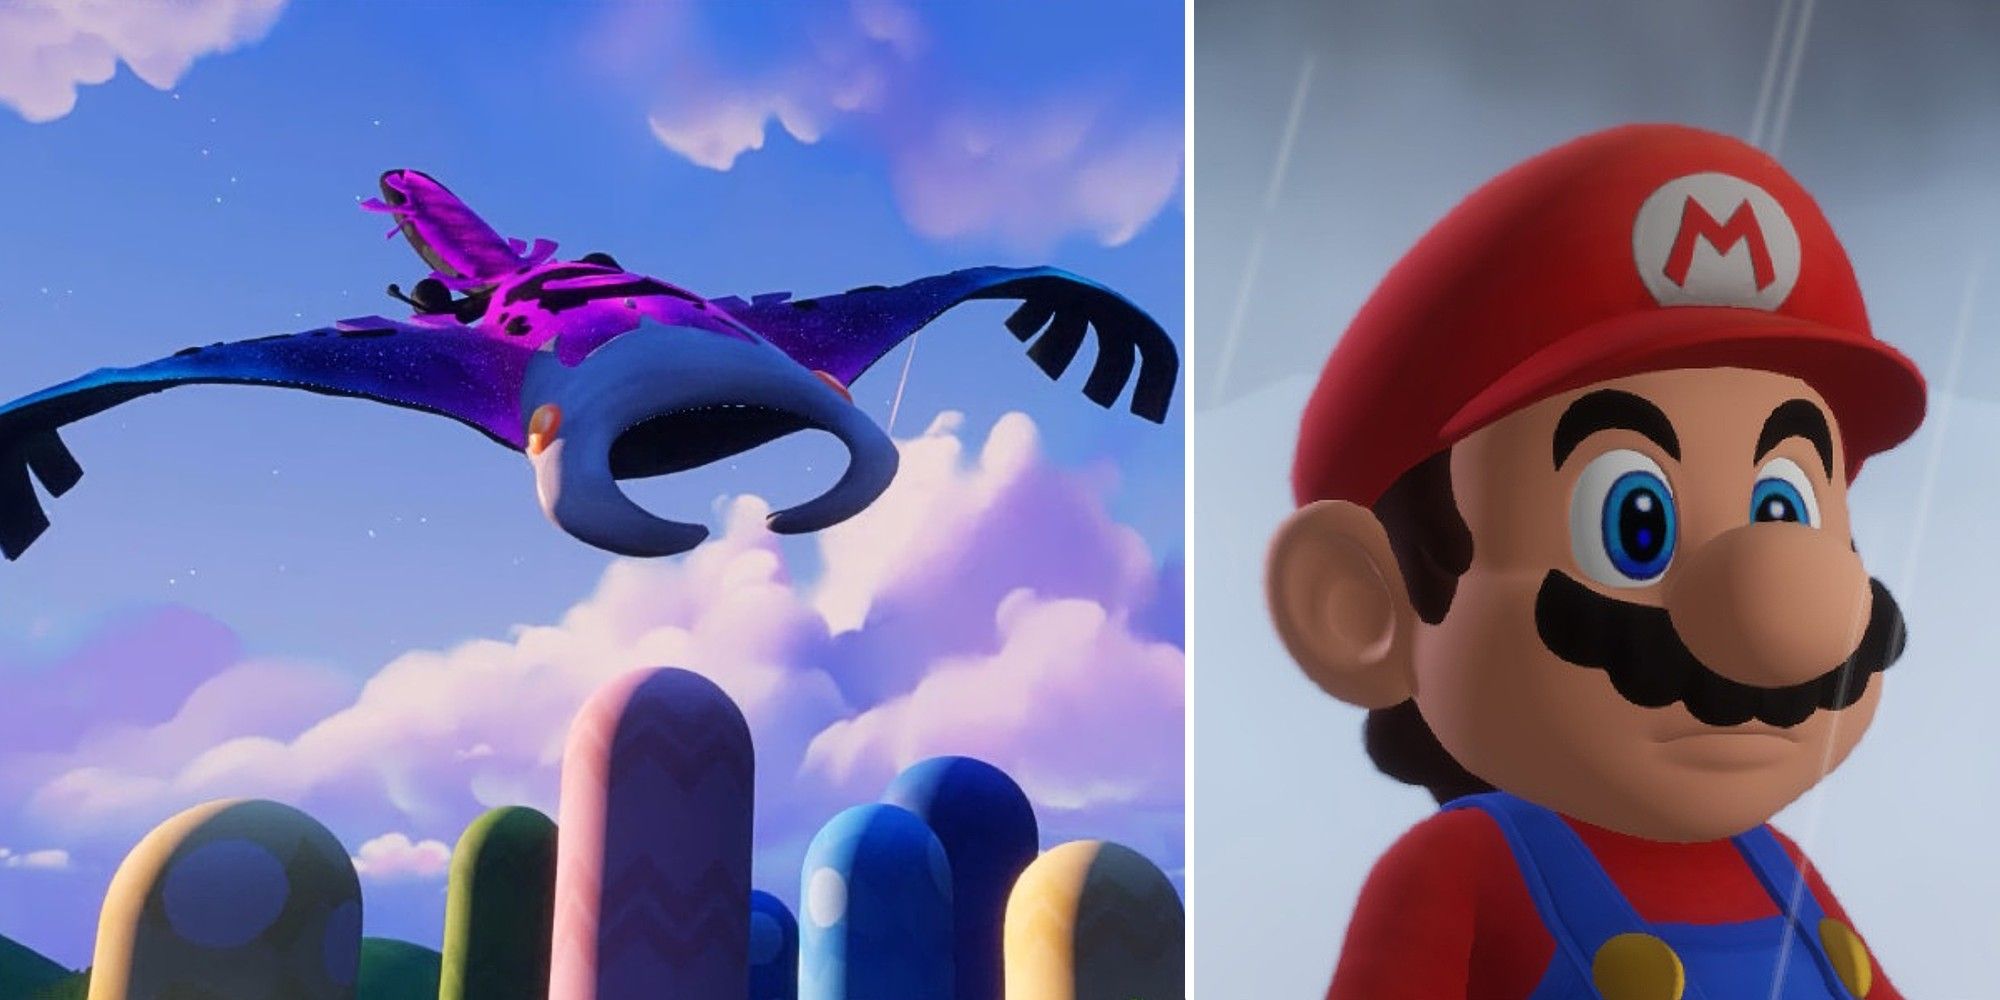 Mario watches as Manta descends in mario + rabbids